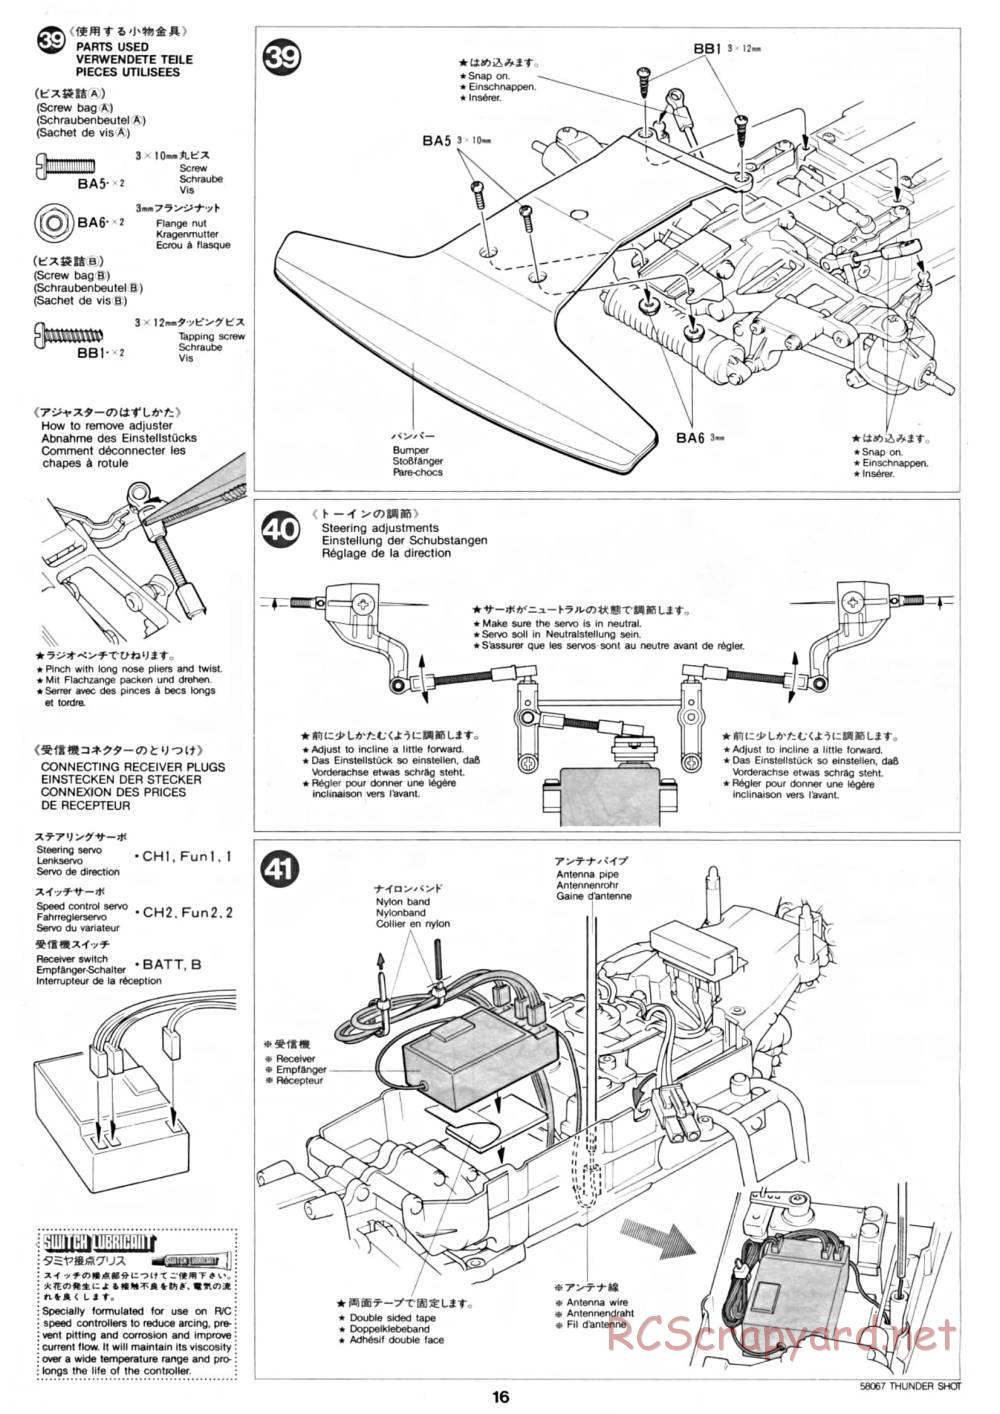 Tamiya - Thunder Shot - 58067 - Manual - Page 16